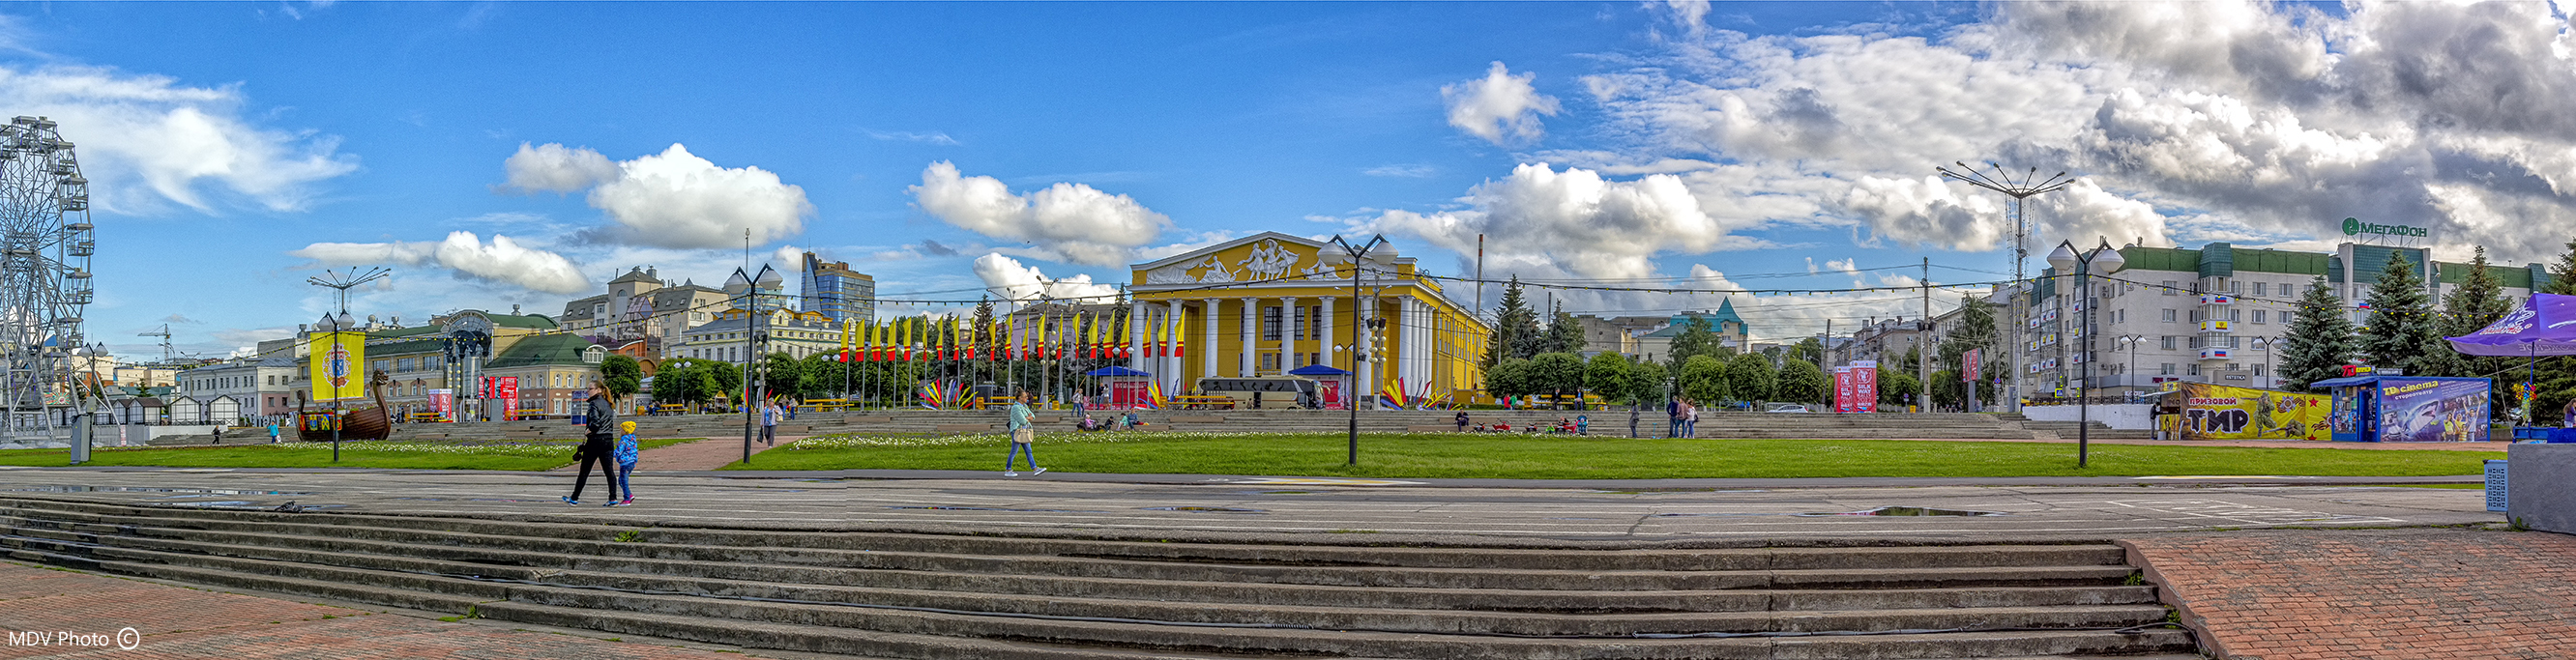 Cheboksary-panorama-teatr-1-2.jpg